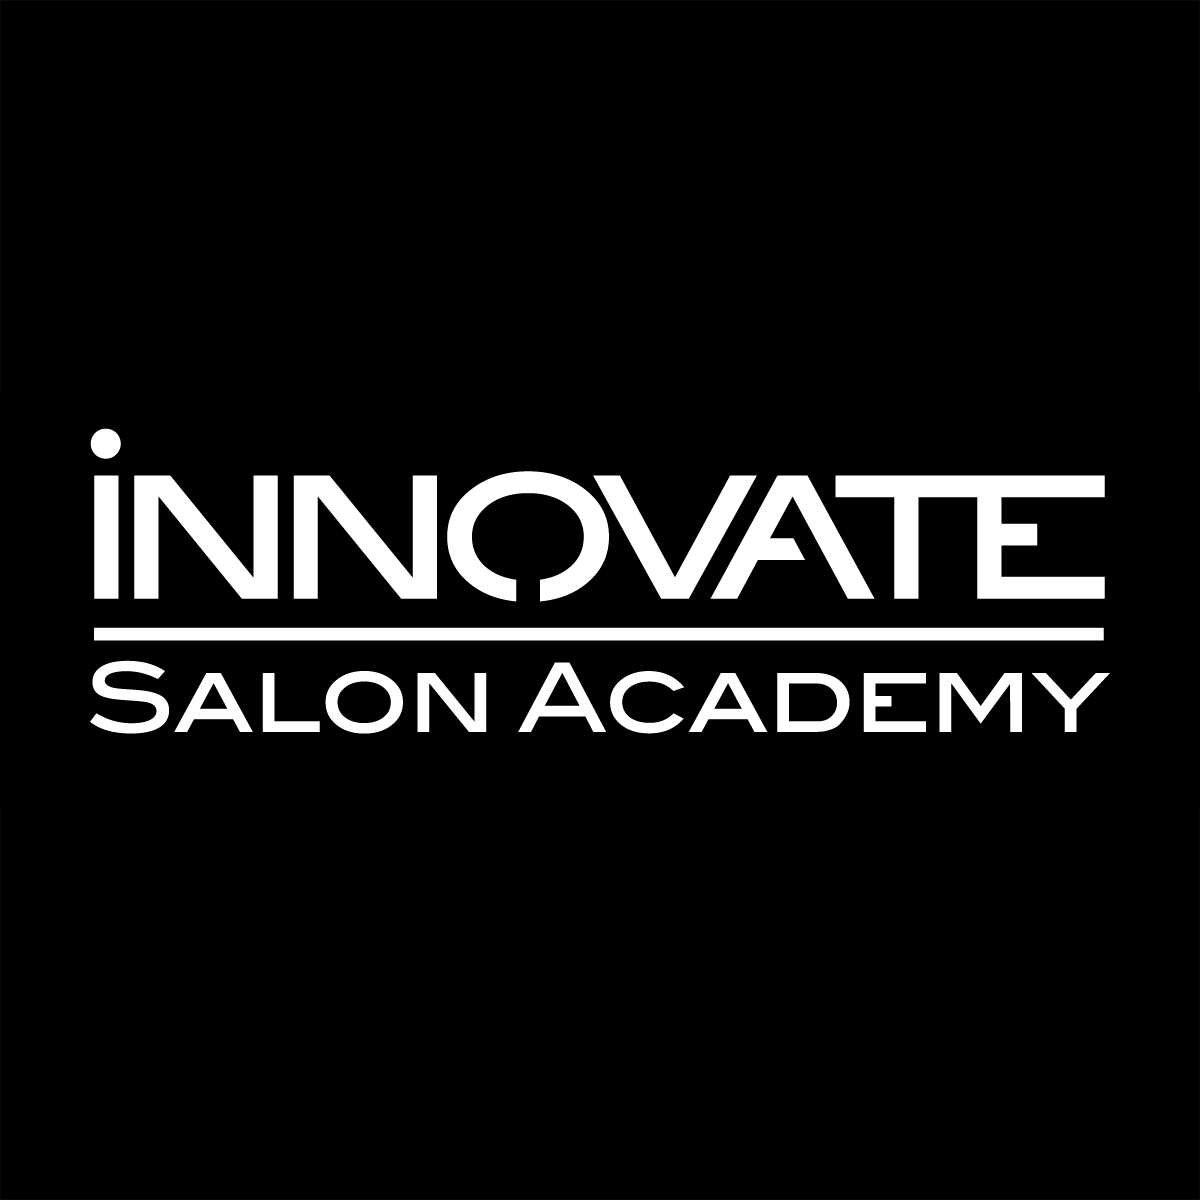 Innovate Salon Academy - South Plainfield, NJ 07080 - (908)412-9600 | ShowMeLocal.com